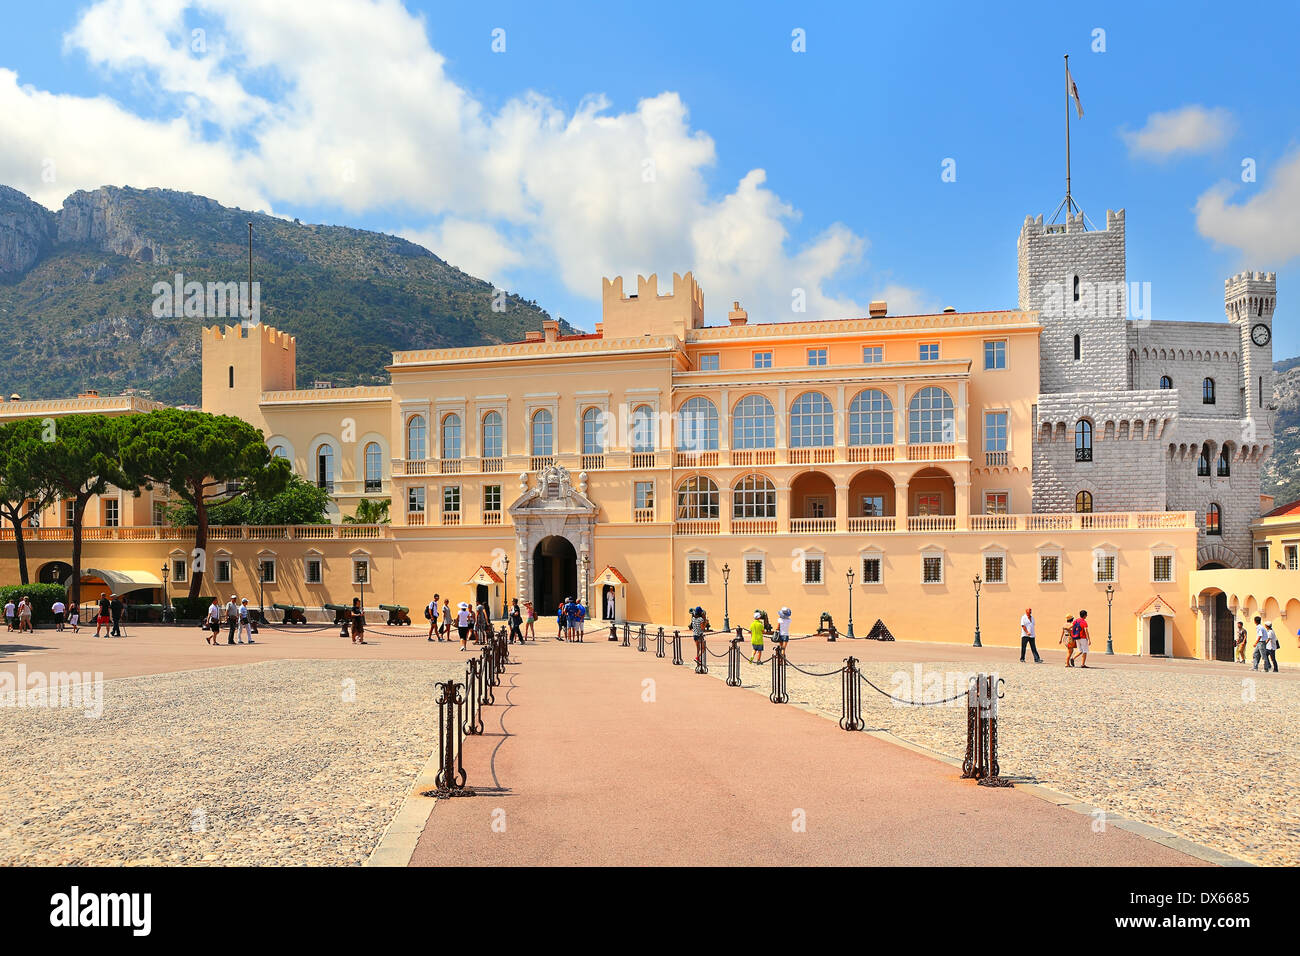 Vue extérieure du palais - résidence officielle du Prince de Monaco. Banque D'Images